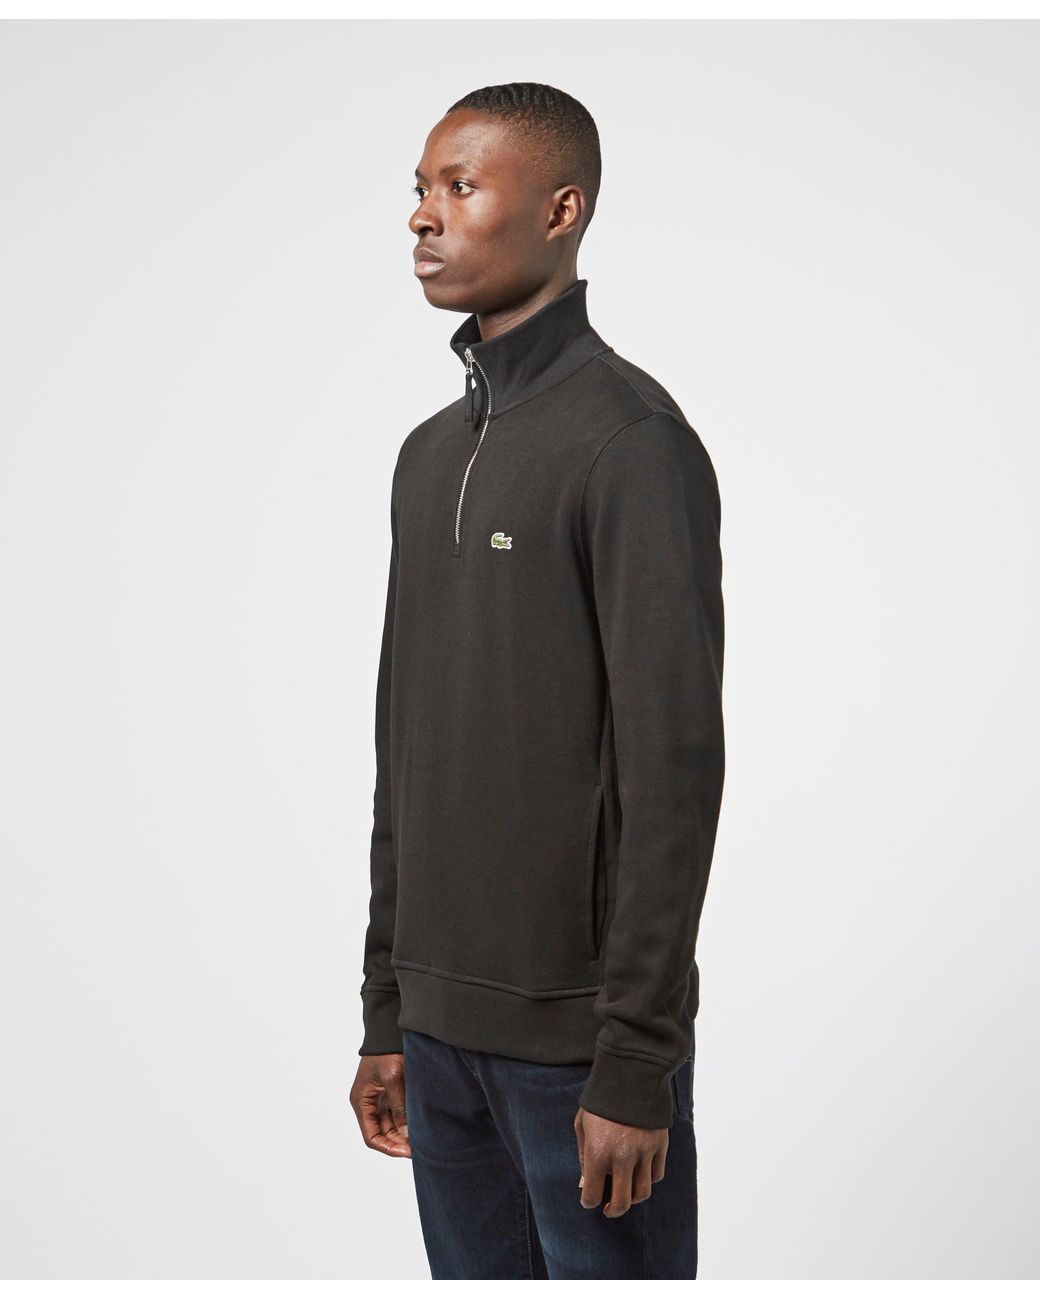 Cotton Blend Fleece Zip Sweatshirt Lacoste Full Zip Track Top Black